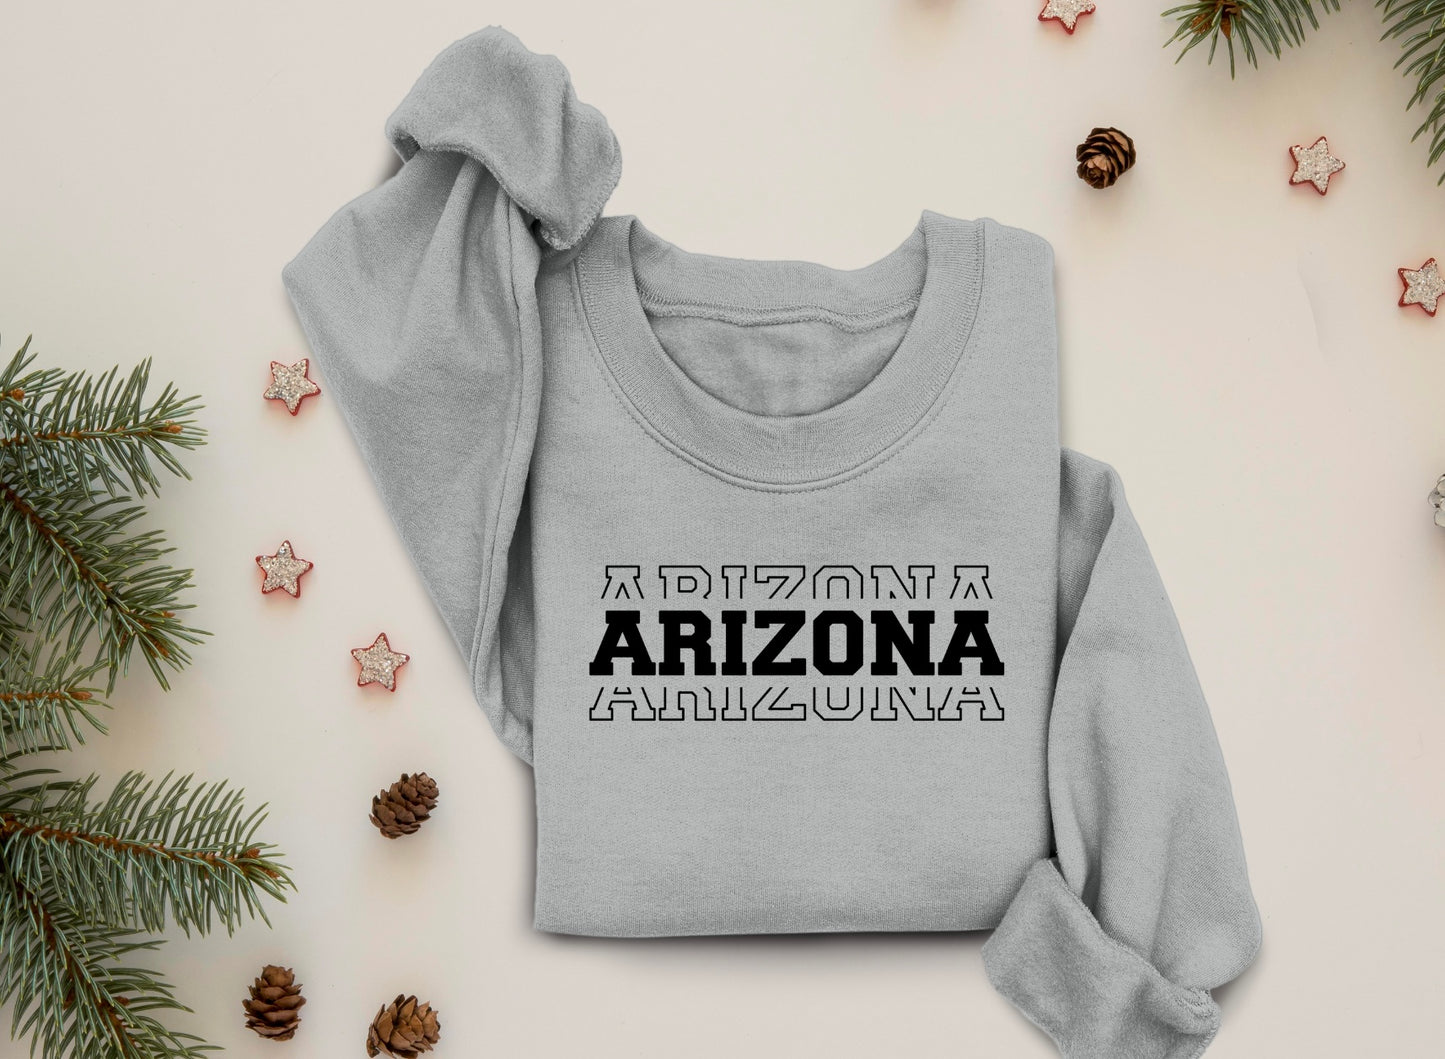 Arizona Sweatshirt, Arizona Hoodie, Arizona Tee, Arizona Sweater, State Hoodie, State Sweater, State Sweatshirt, State T-shirt